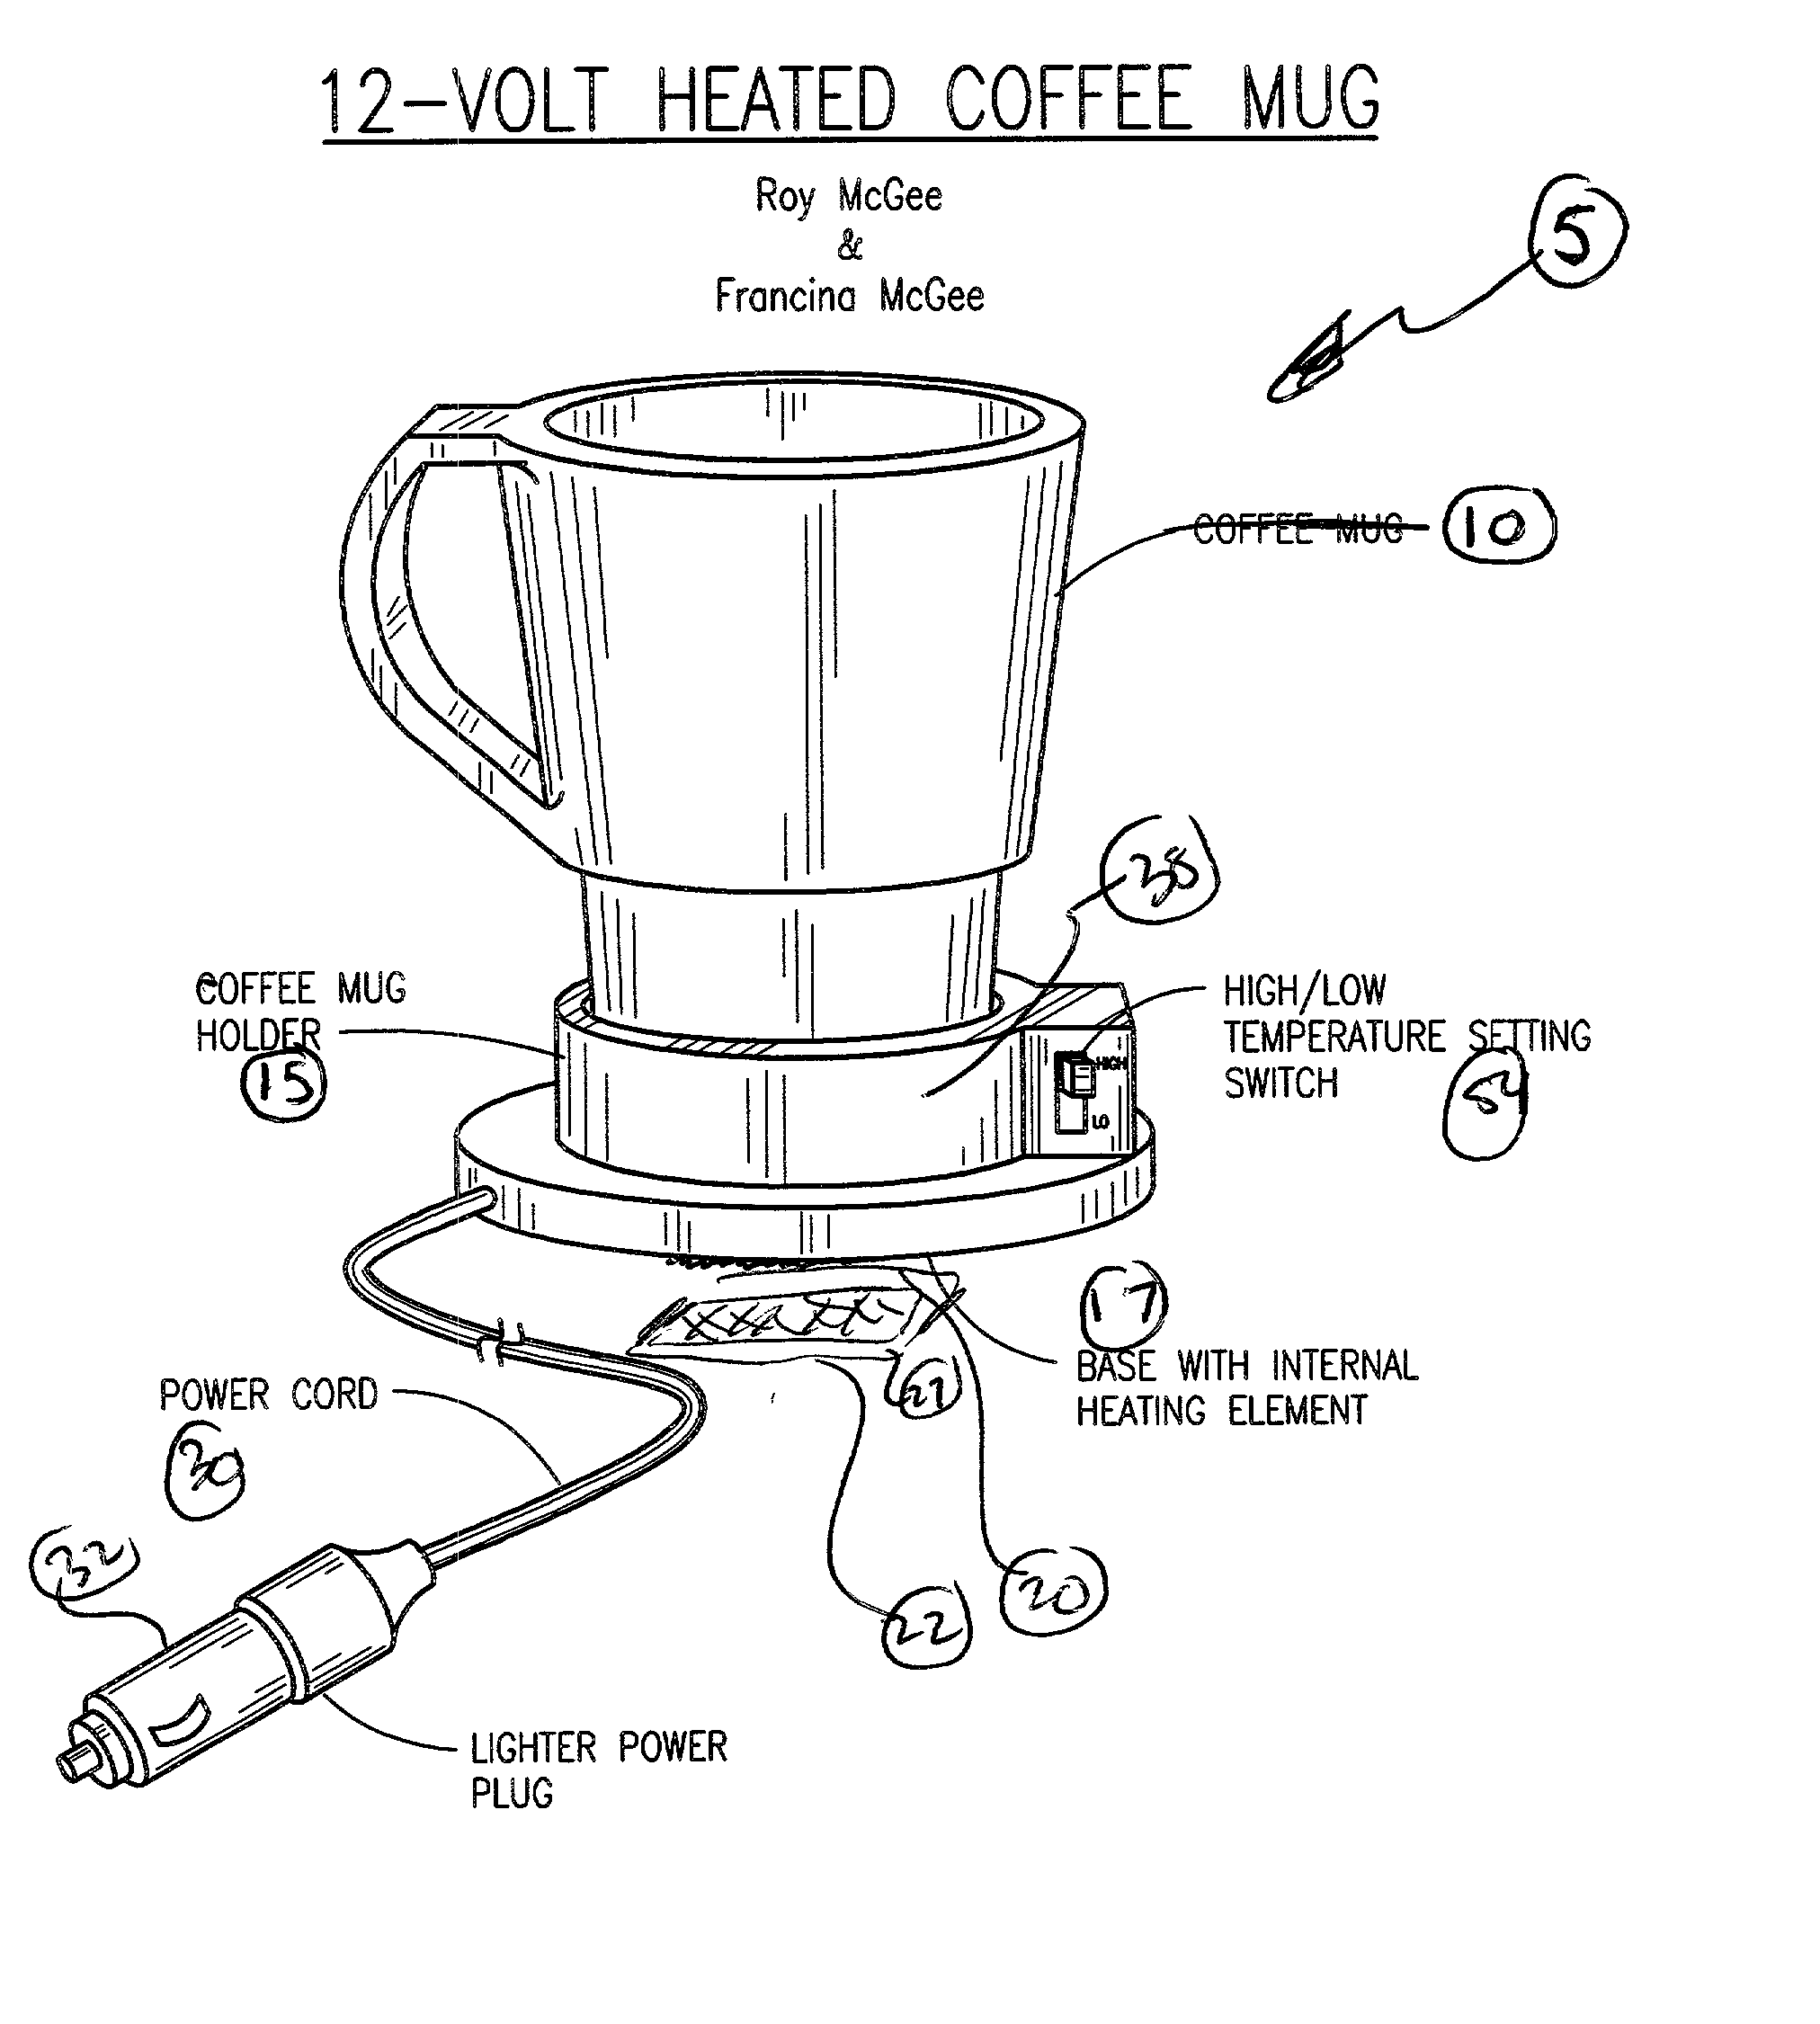 12-volt heated coffee mug